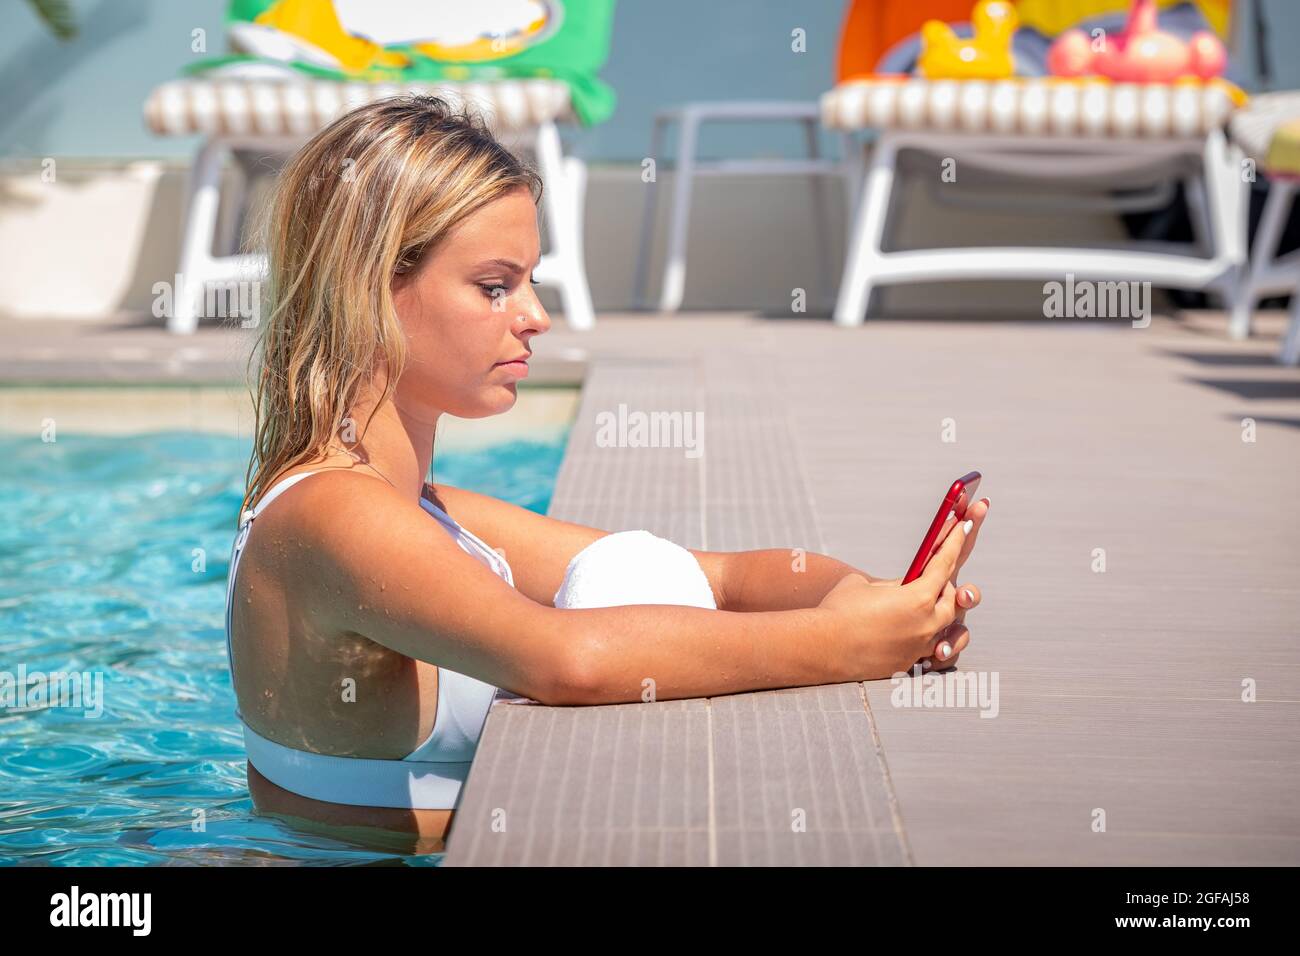 Bonne fille de caucase dans la piscine sourit tout en visiophonie et surfer sur Internet avec son smartphone rouge - Portrait bonne fille se relaxant dans la natation Banque D'Images